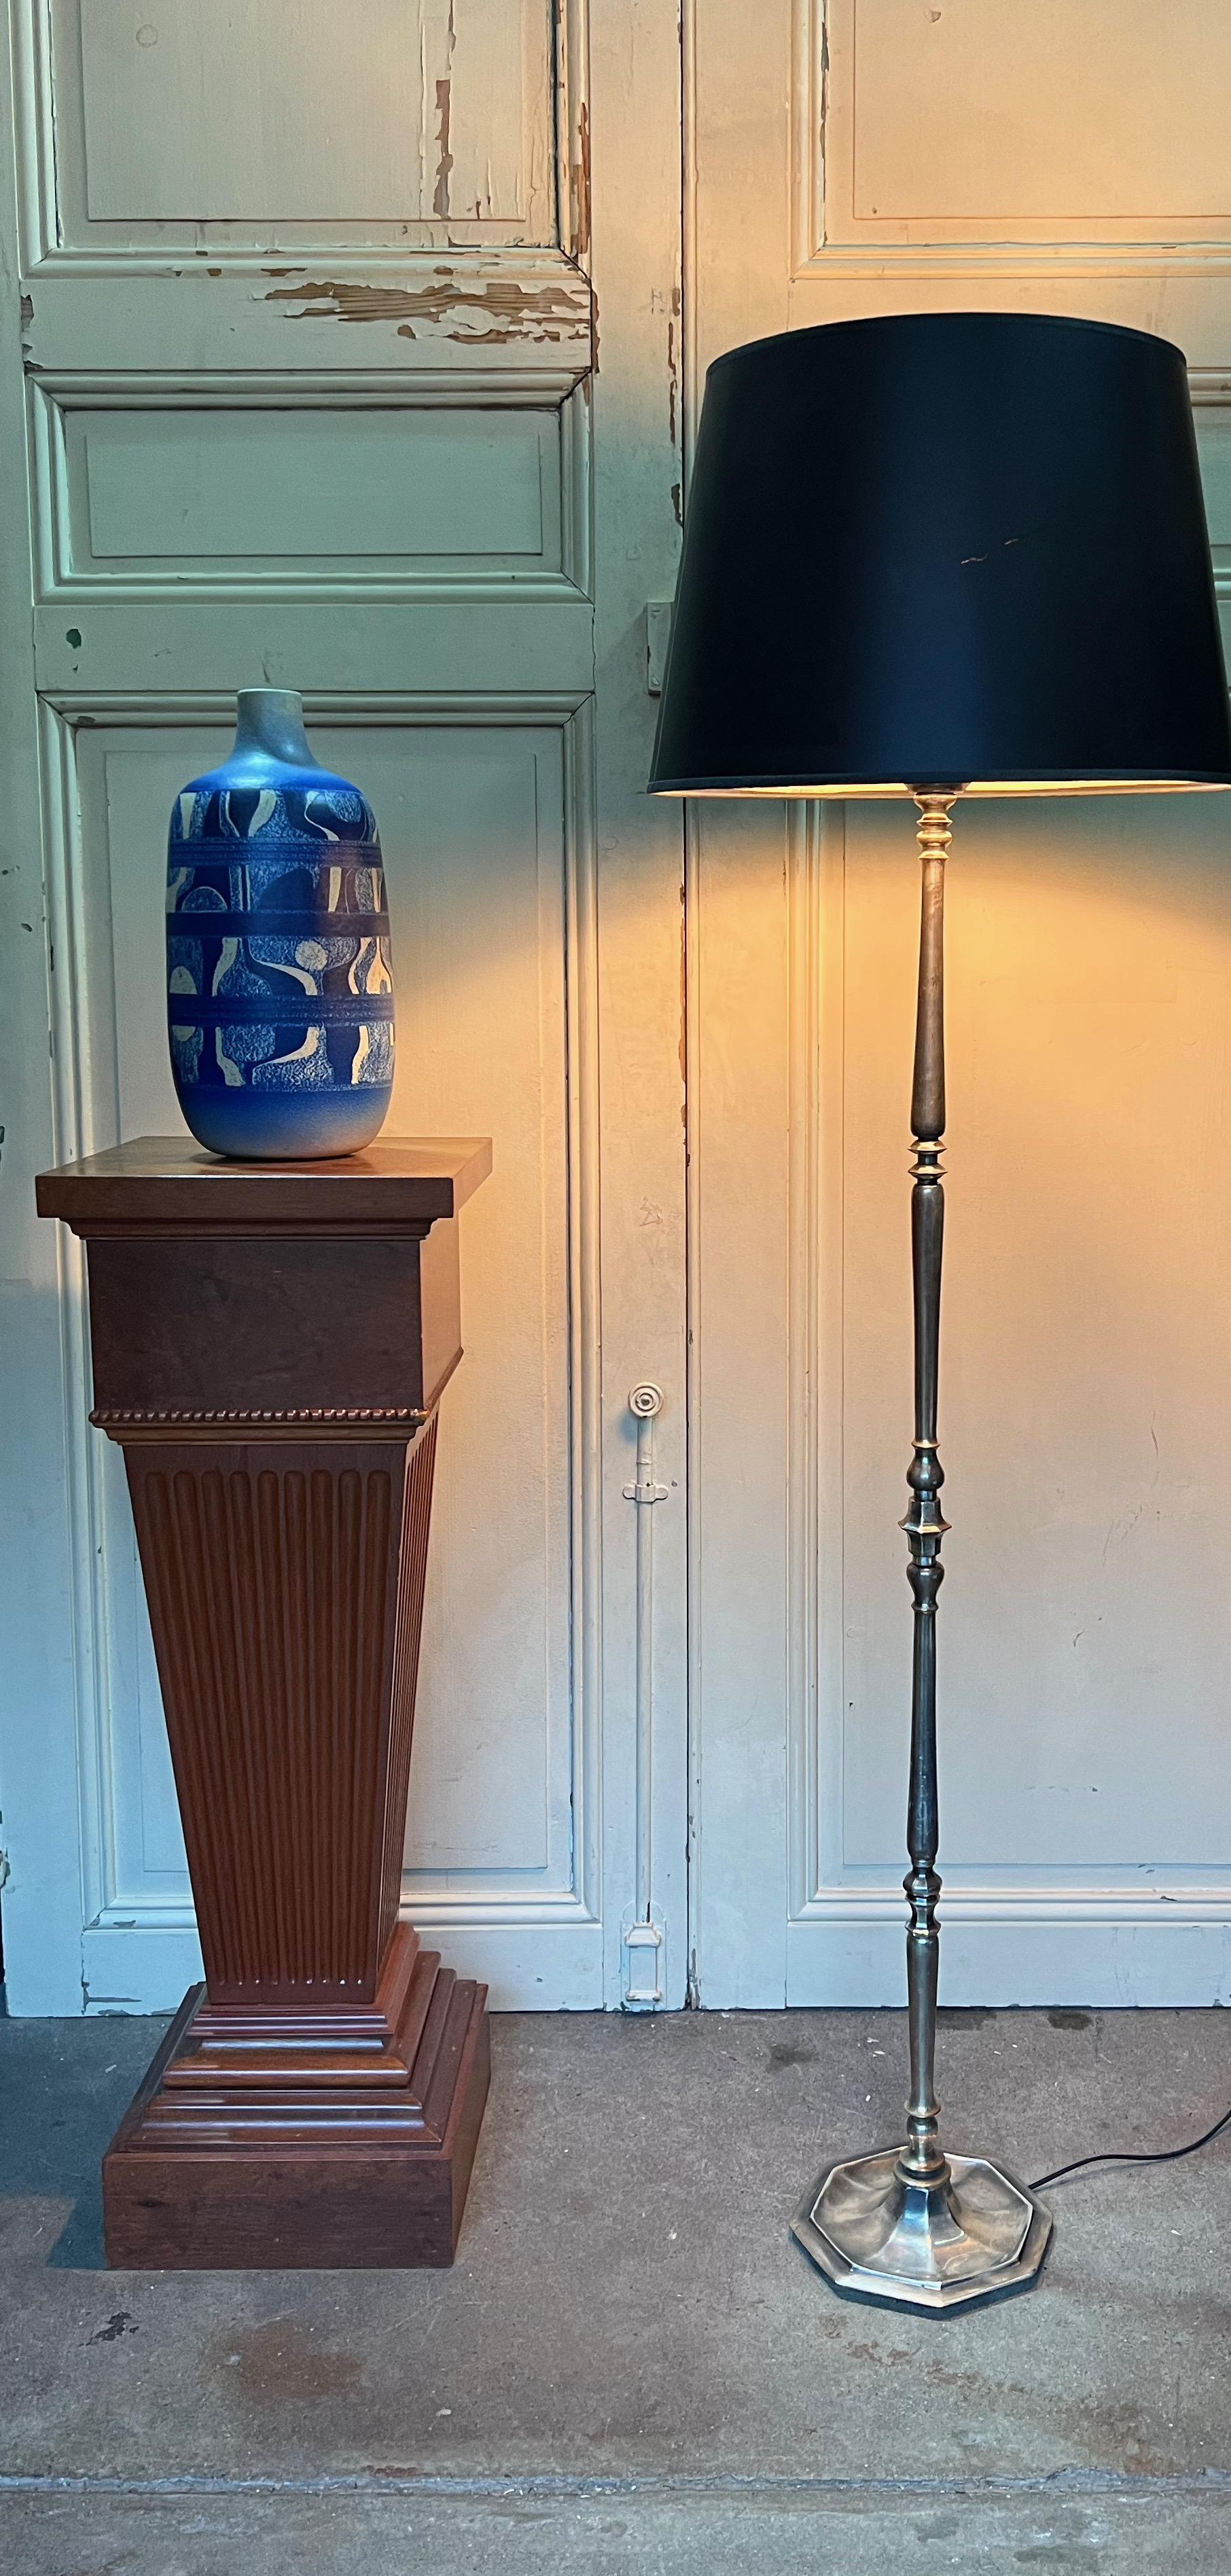 Voici un élégant et mince lampadaire français en laiton argenté des années 1940. La lampe a fait l'objet d'un polissage manuel méticuleux, dévoilant ses riches tons argentés tout en conservant les nuances subtiles qui reflètent son âge et son